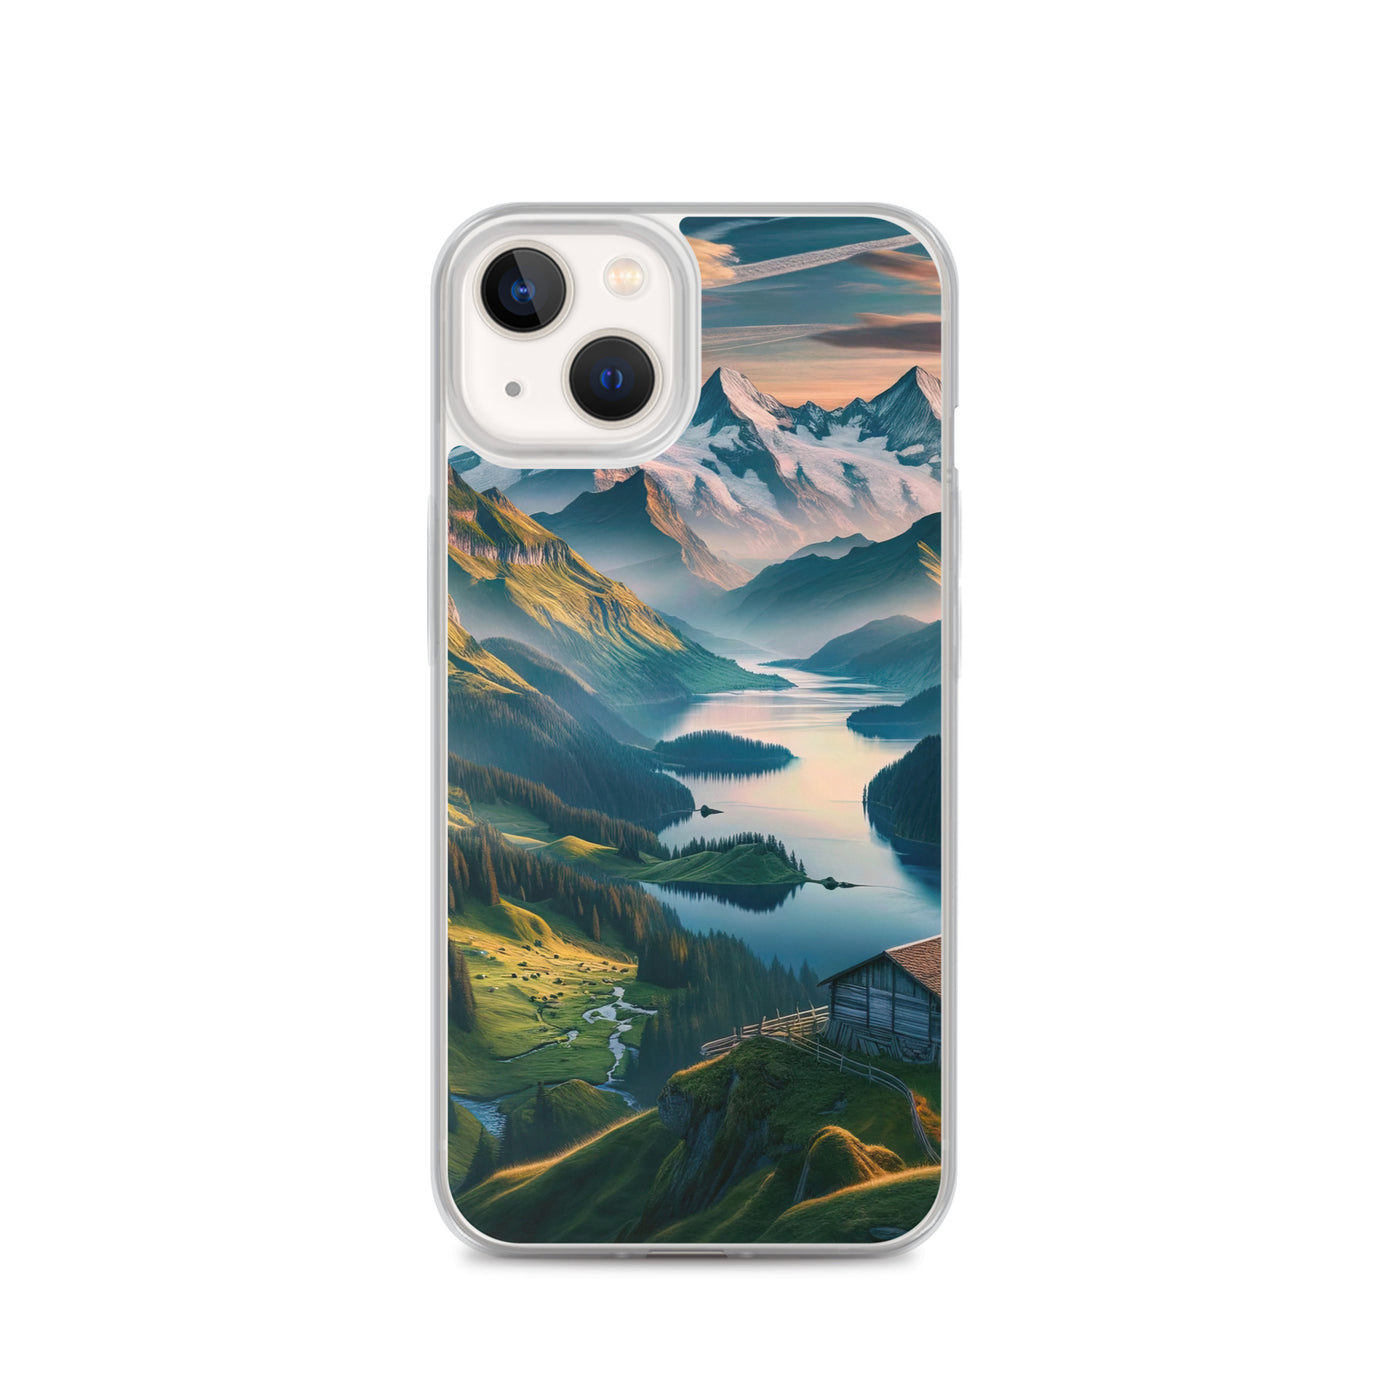 Schweizer Flagge, Alpenidylle: Dämmerlicht, epische Berge und stille Gewässer - iPhone Schutzhülle (durchsichtig) berge xxx yyy zzz iPhone 13